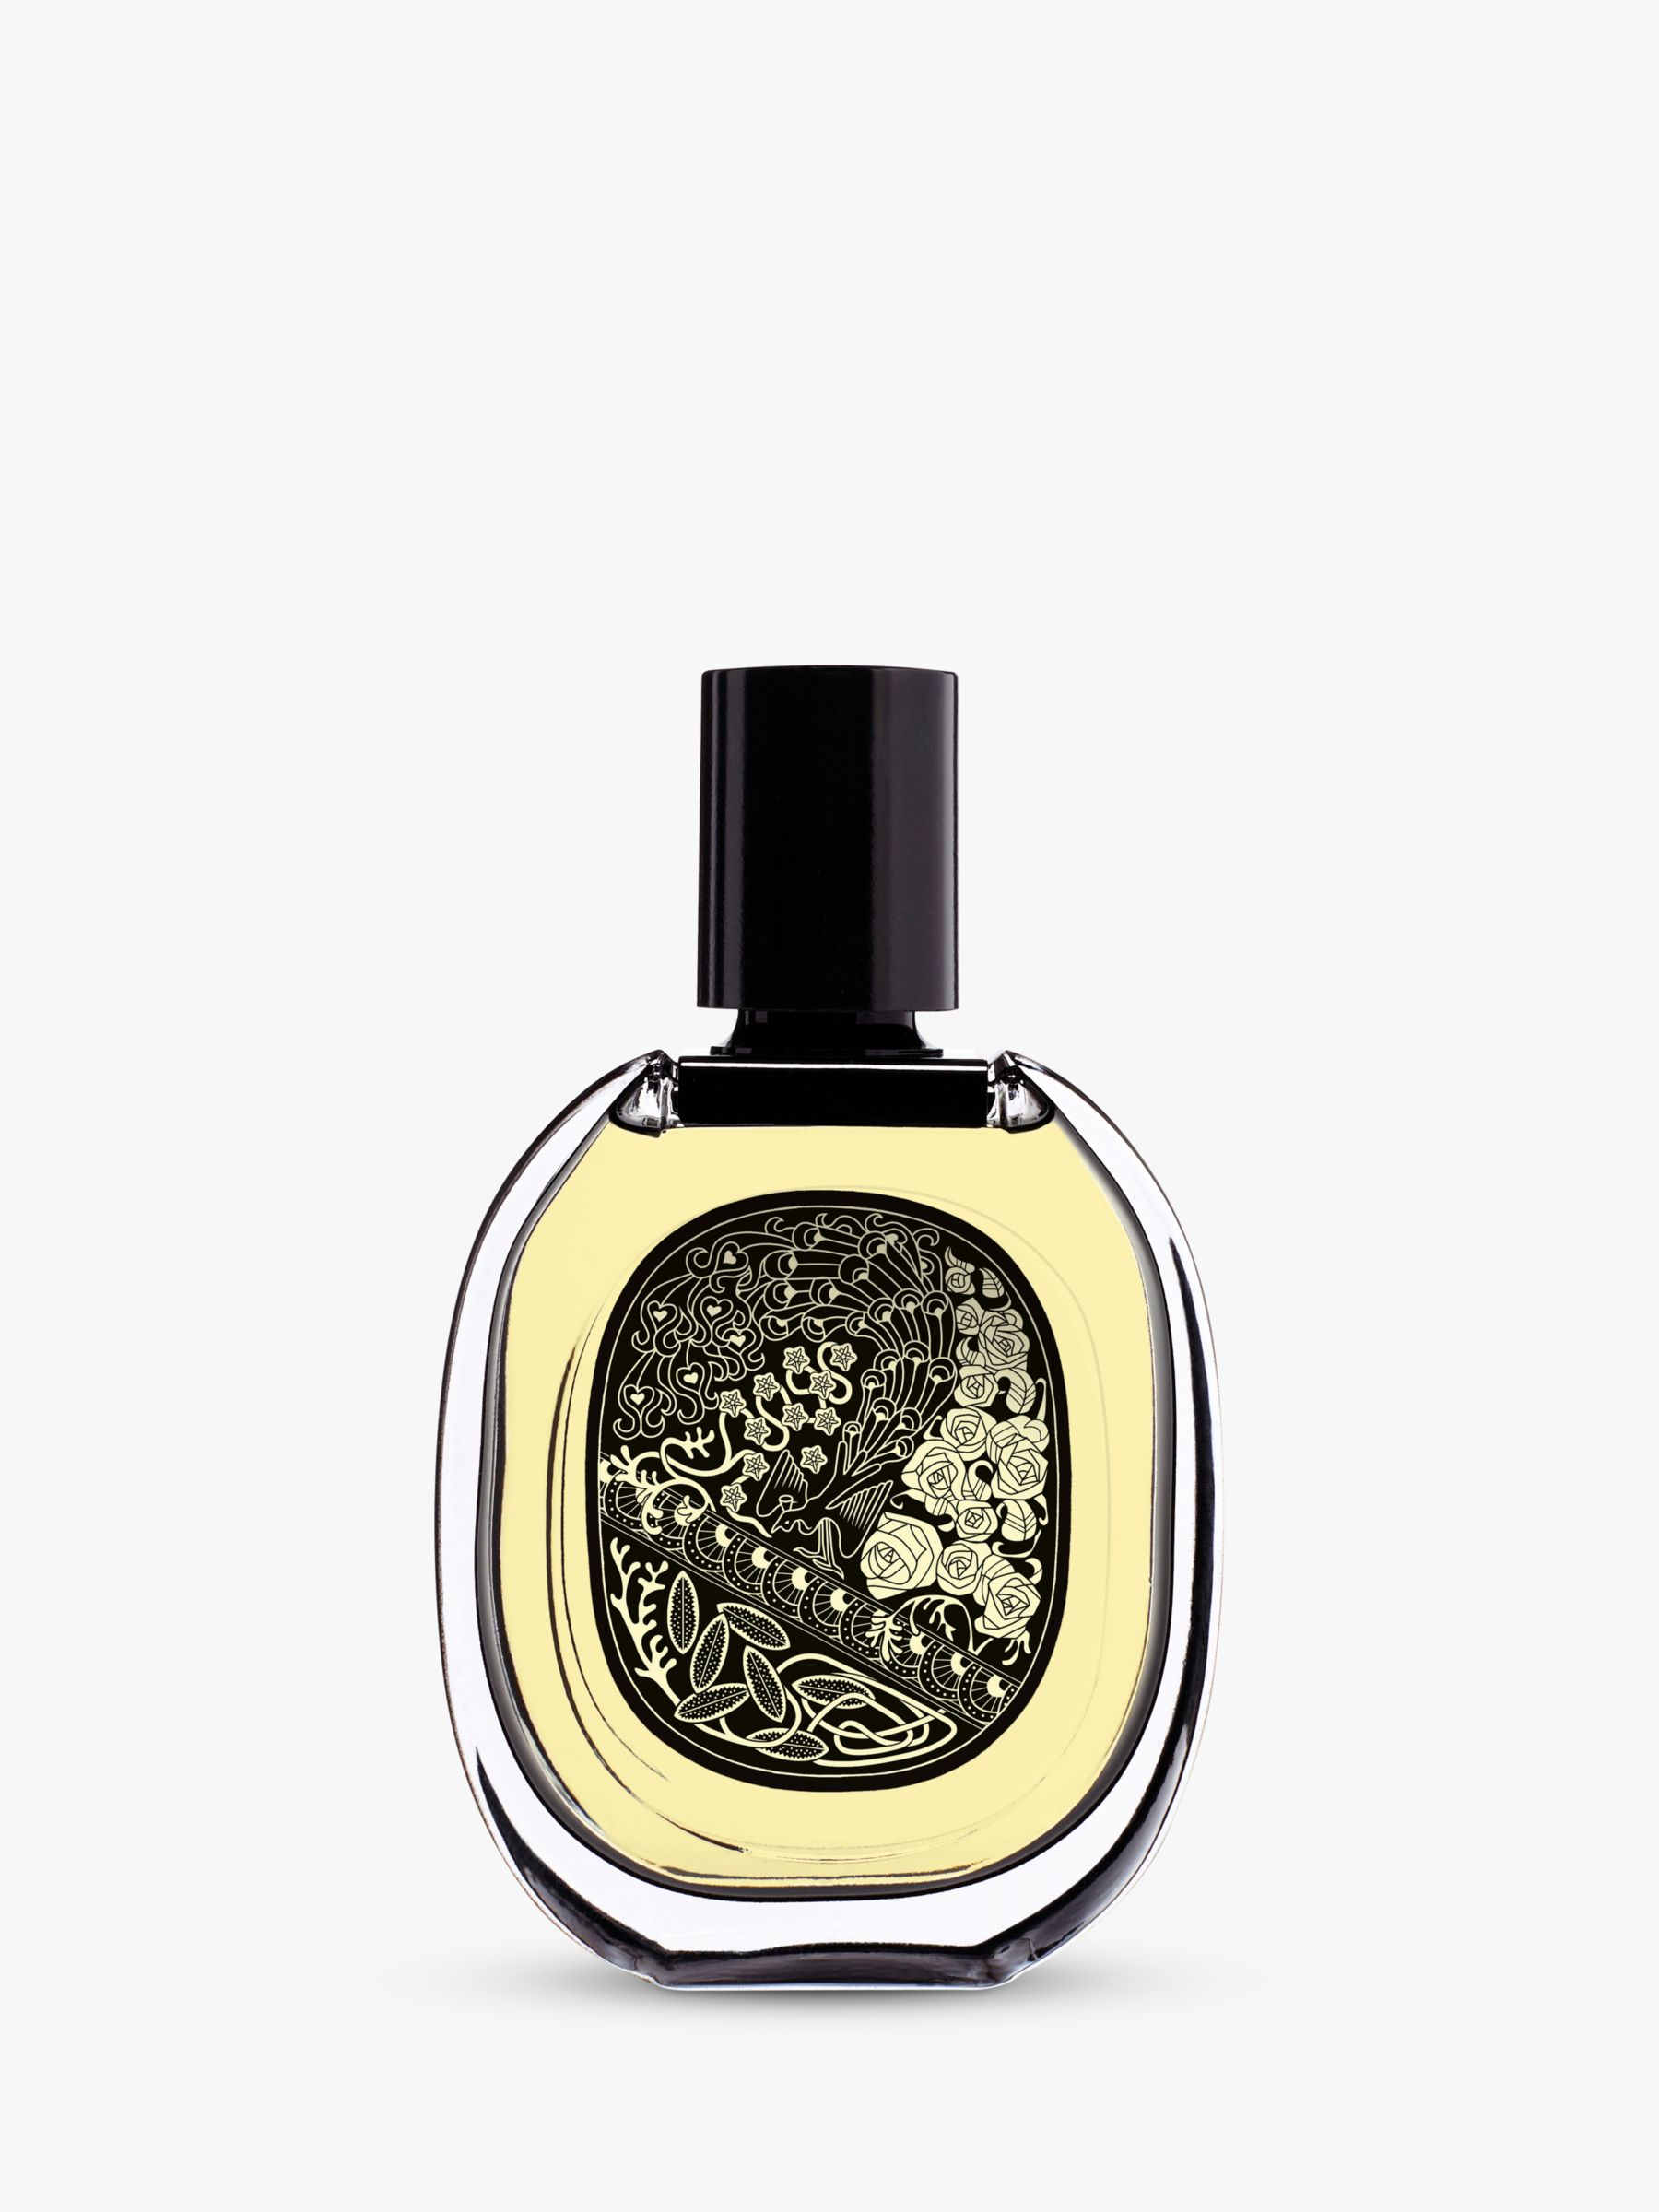 Diptyque Eau Capitale Eau de Parfum, 75ml